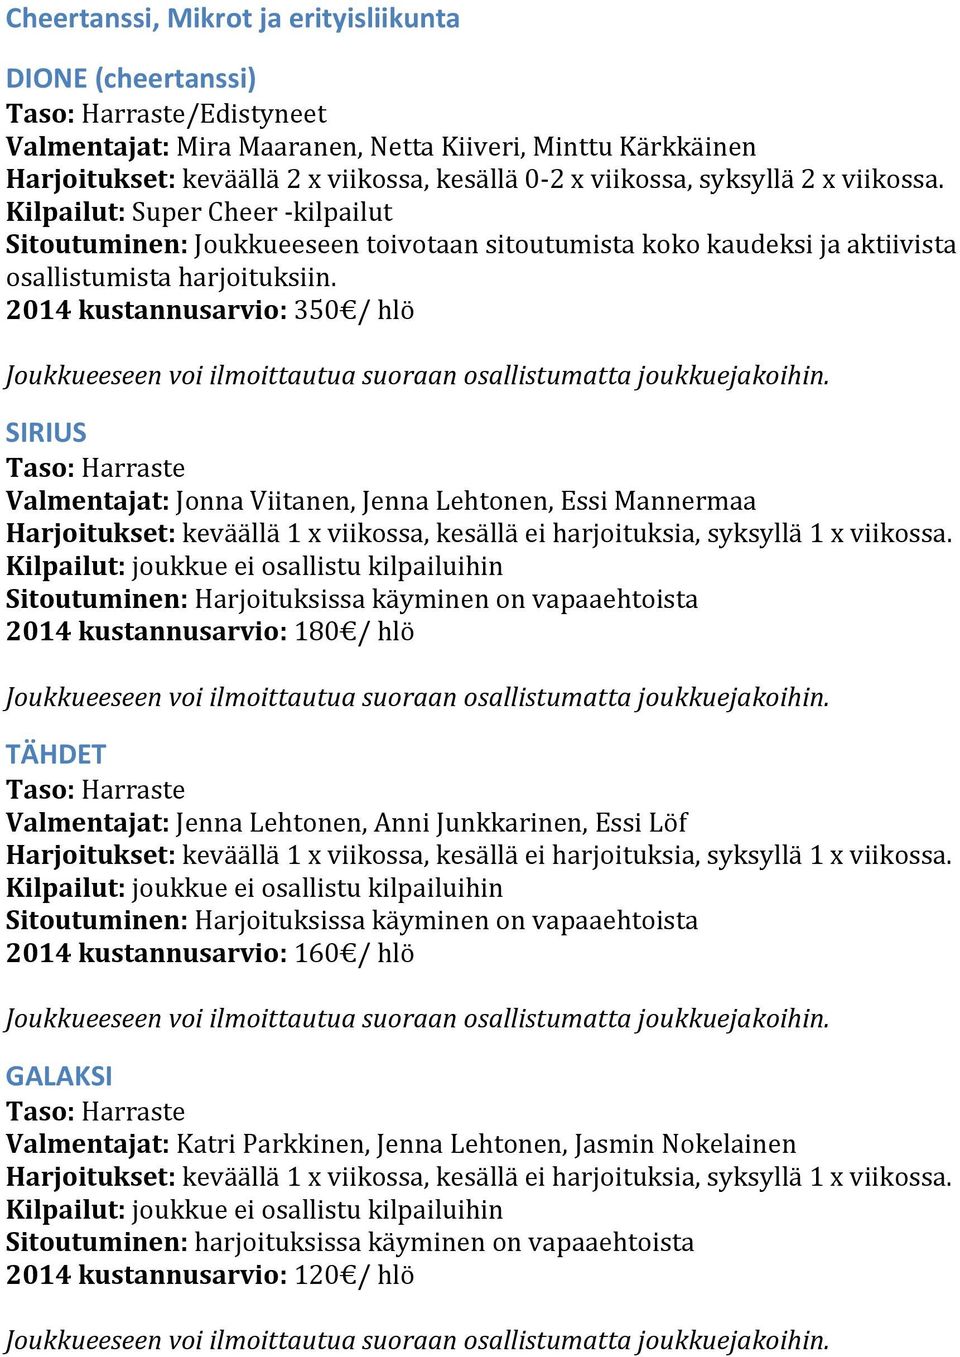 2014 kustannusarvio: 350 / hlö SIRIUS Valmentajat: Jonna Viitanen, Jenna Lehtonen, Essi Mannermaa Sitoutuminen: Harjoituksissa käyminen on vapaaehtoista 2014 kustannusarvio: 180 / hlö TÄHDET